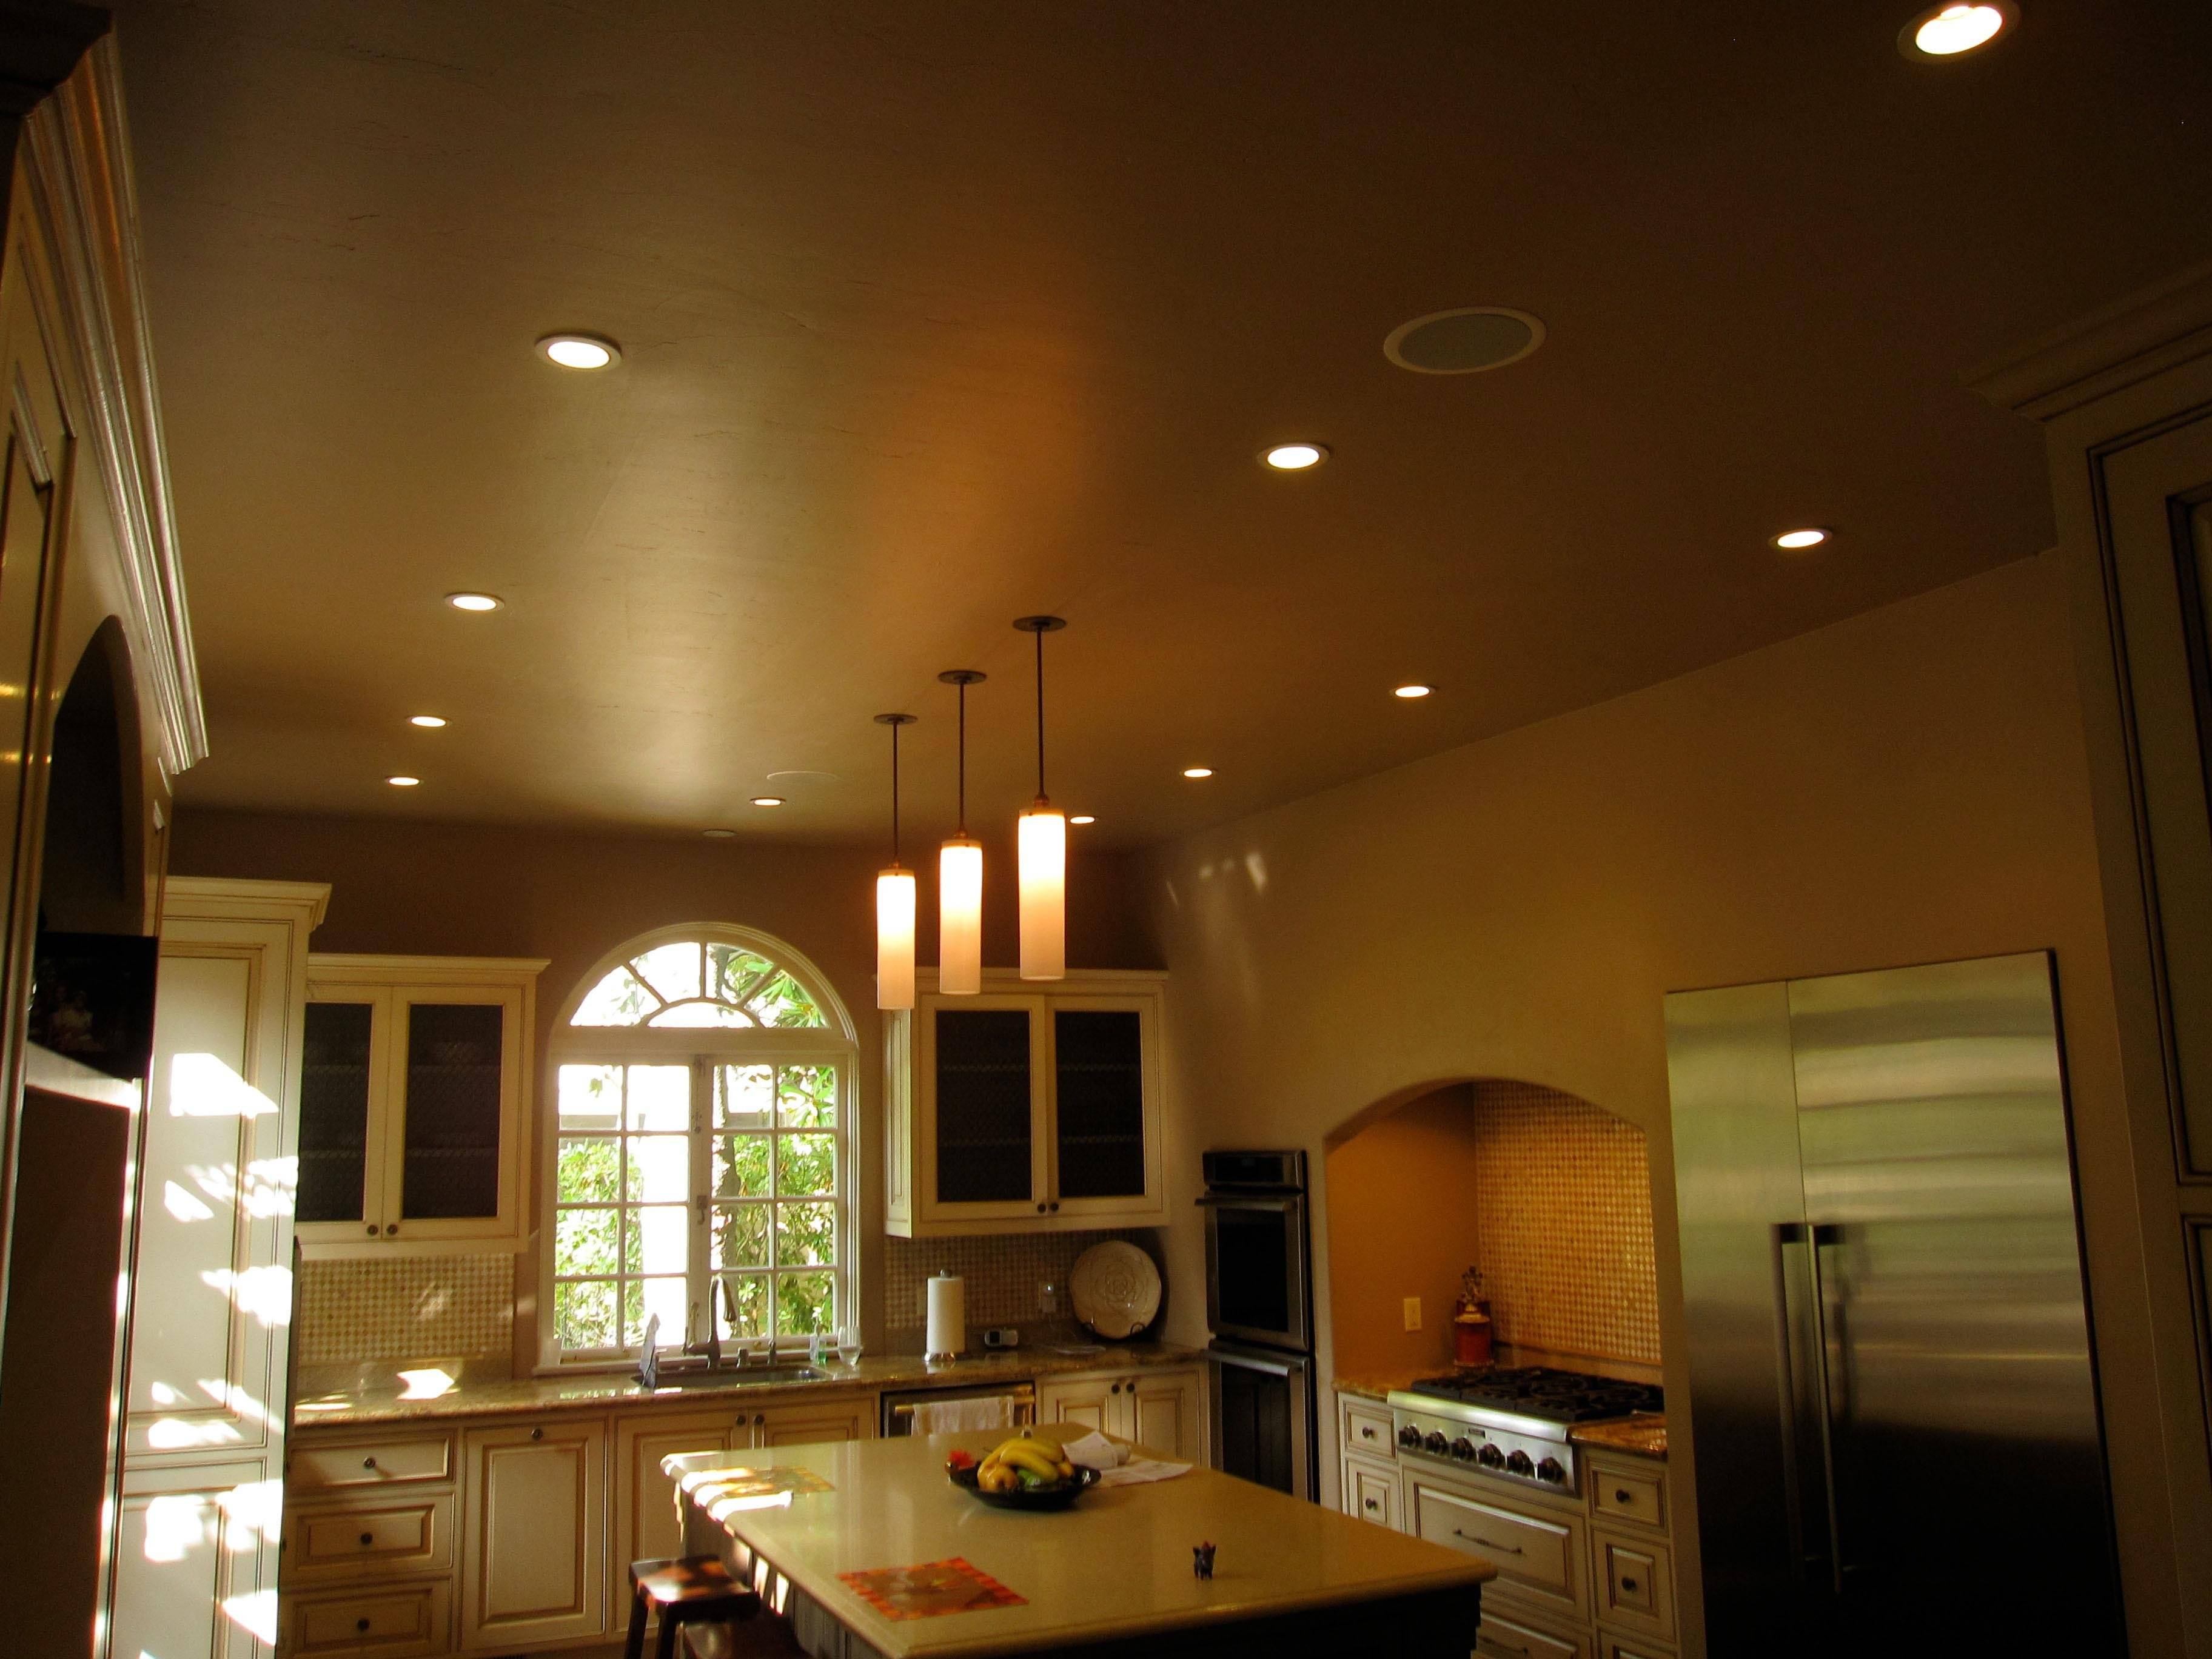 Какой потолок лучше сделать на кухне?